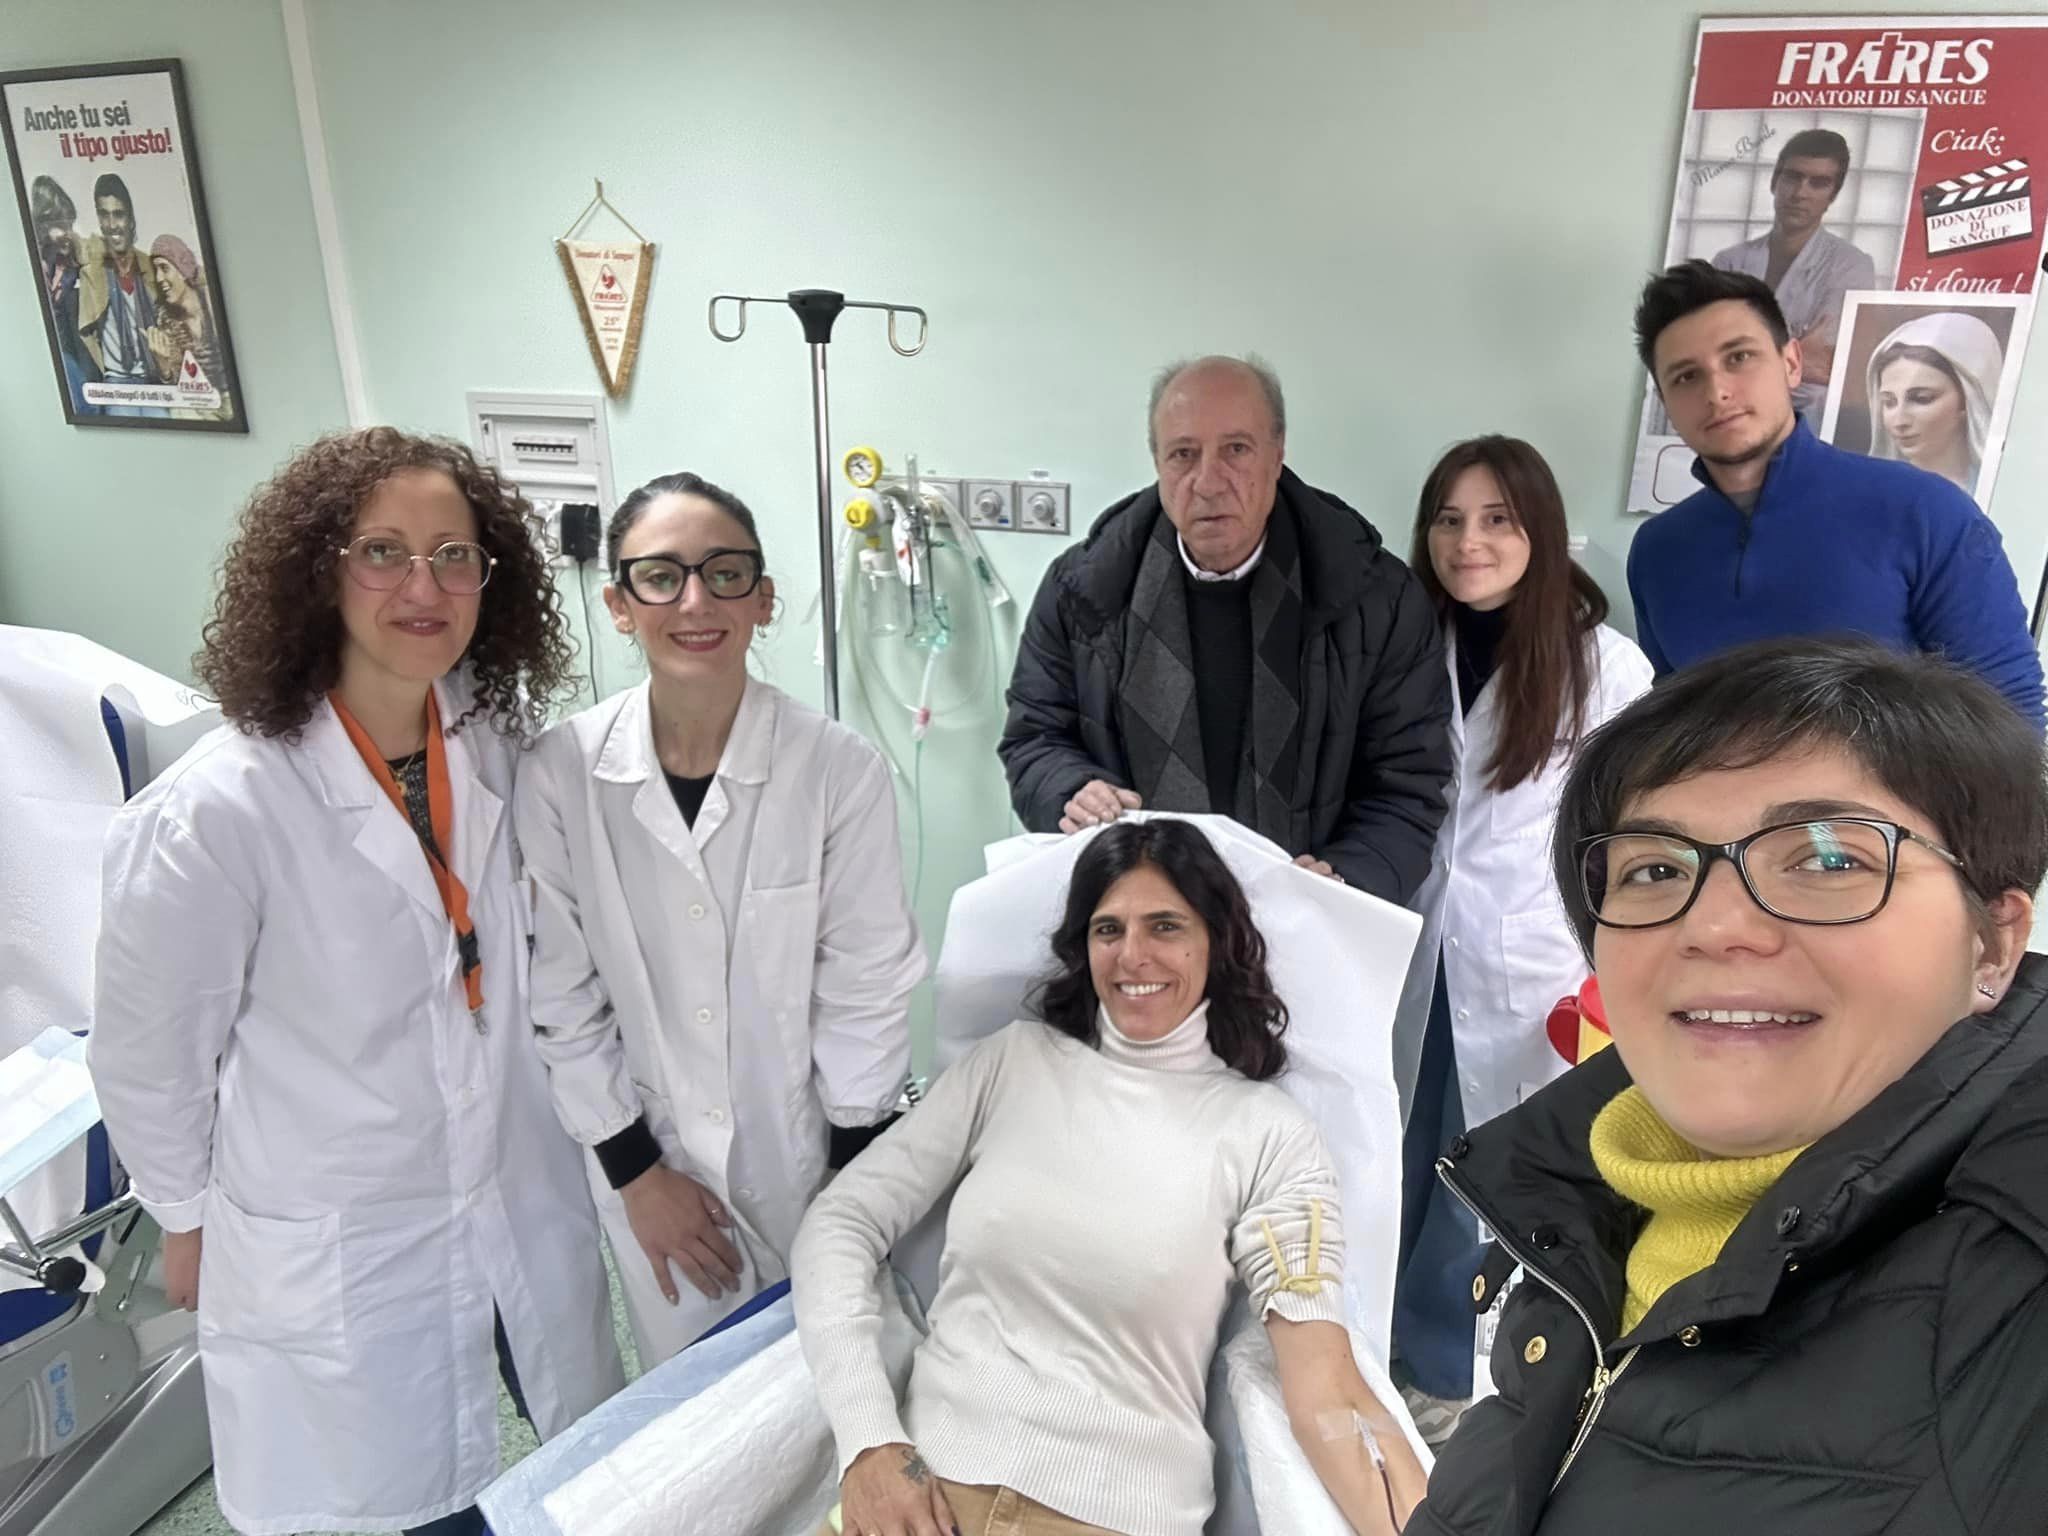 La famiglia “Fratres” si allarga: medici argentini nuovi donatori di sangue